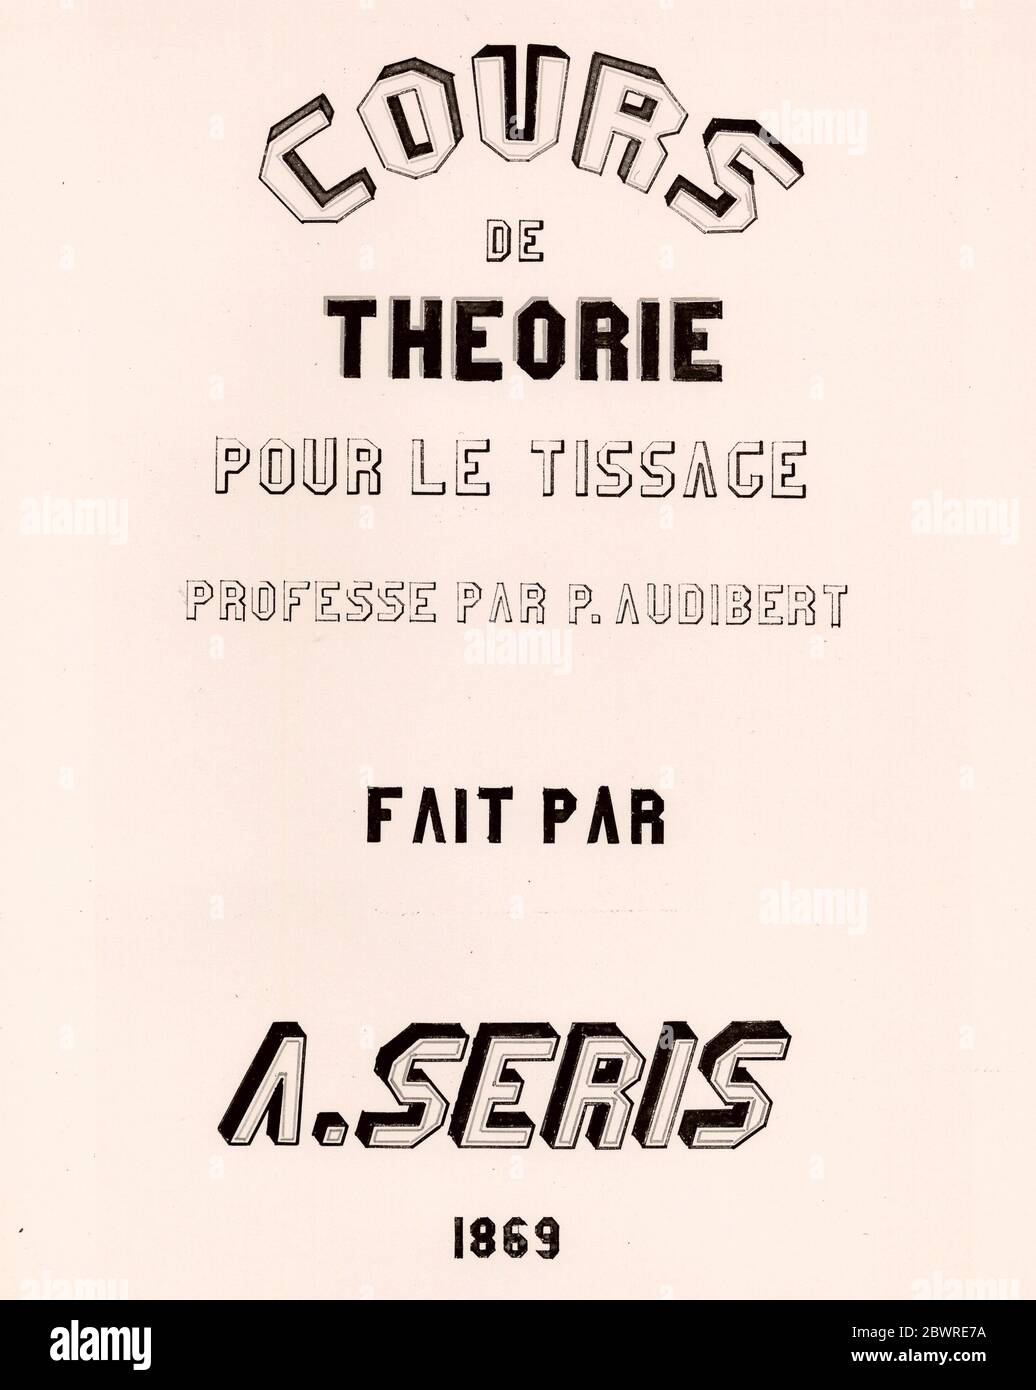 Autor: P. Audibert. Cours de Thorie pour la Tissage - 1869 - P. Audibert (Französisch, aktive c. 1869 ) und A. Seris (Französisch, aktiv c. 1869) Frankreich. Stockfoto